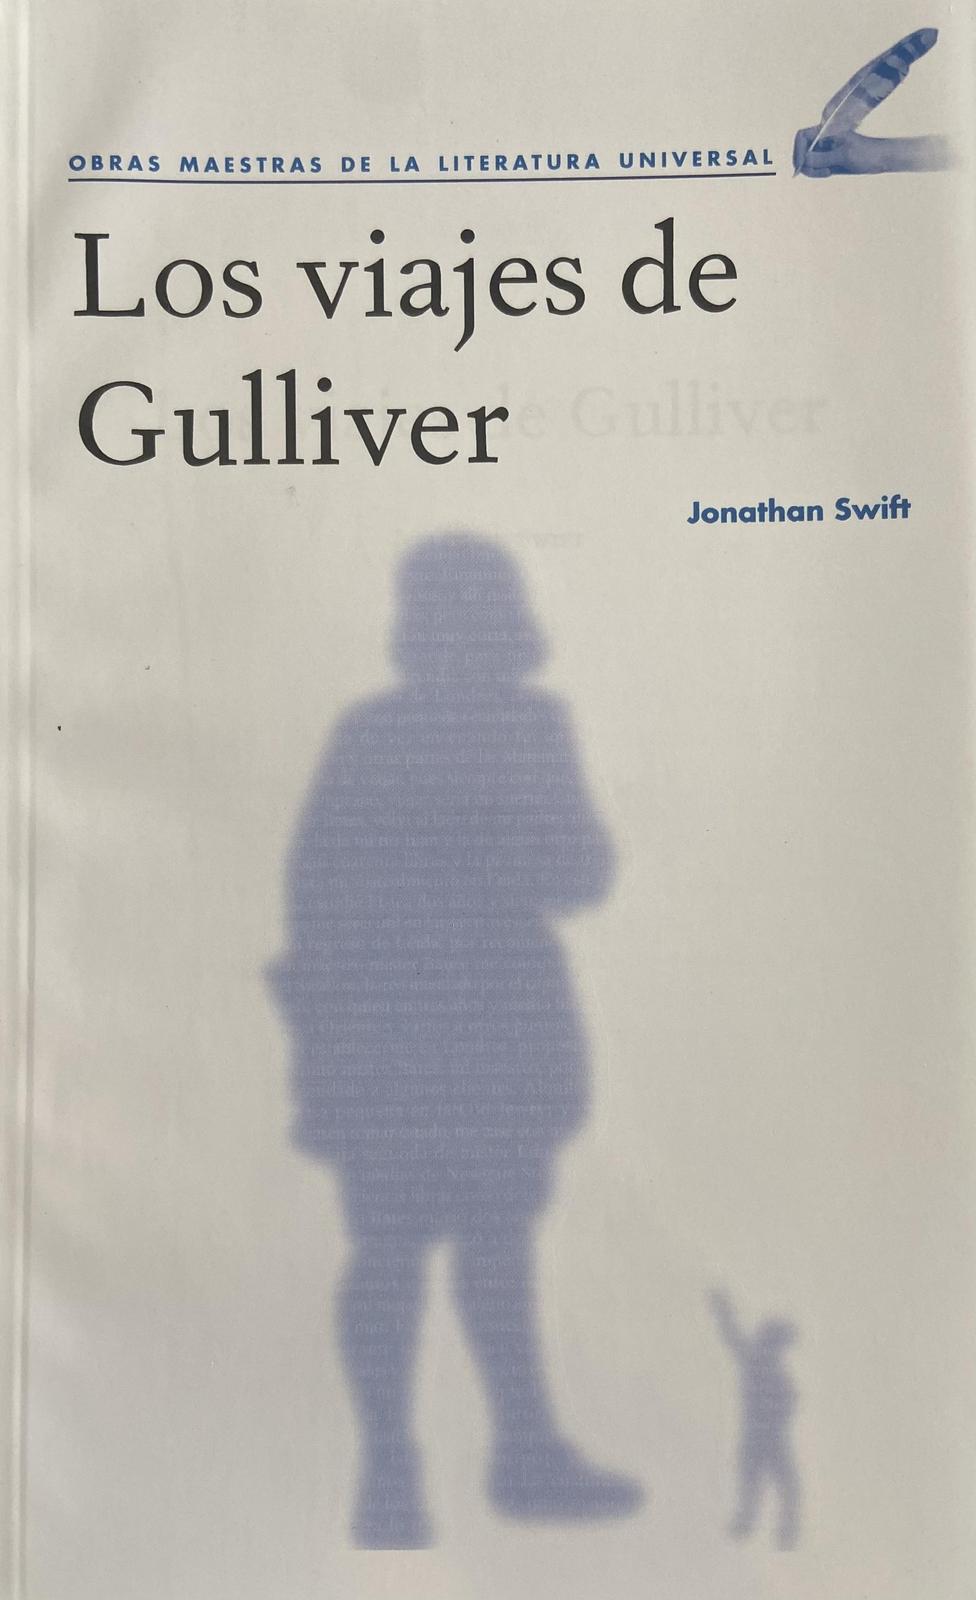 Los viajes de Gulliver (Spanish language, 2020, Agencia Promotora de Publicaciones, S.A. de C.V.)